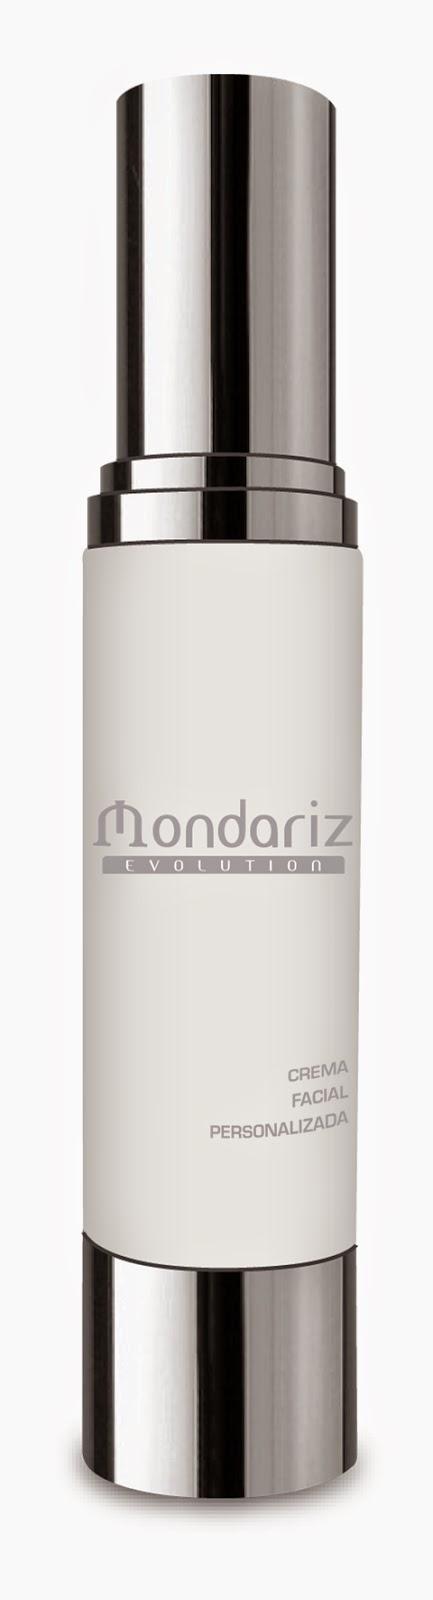 Balneario de Mondariz  regresa a las farmacias  con su  línea cosmética personalizada  Mondariz Evolution